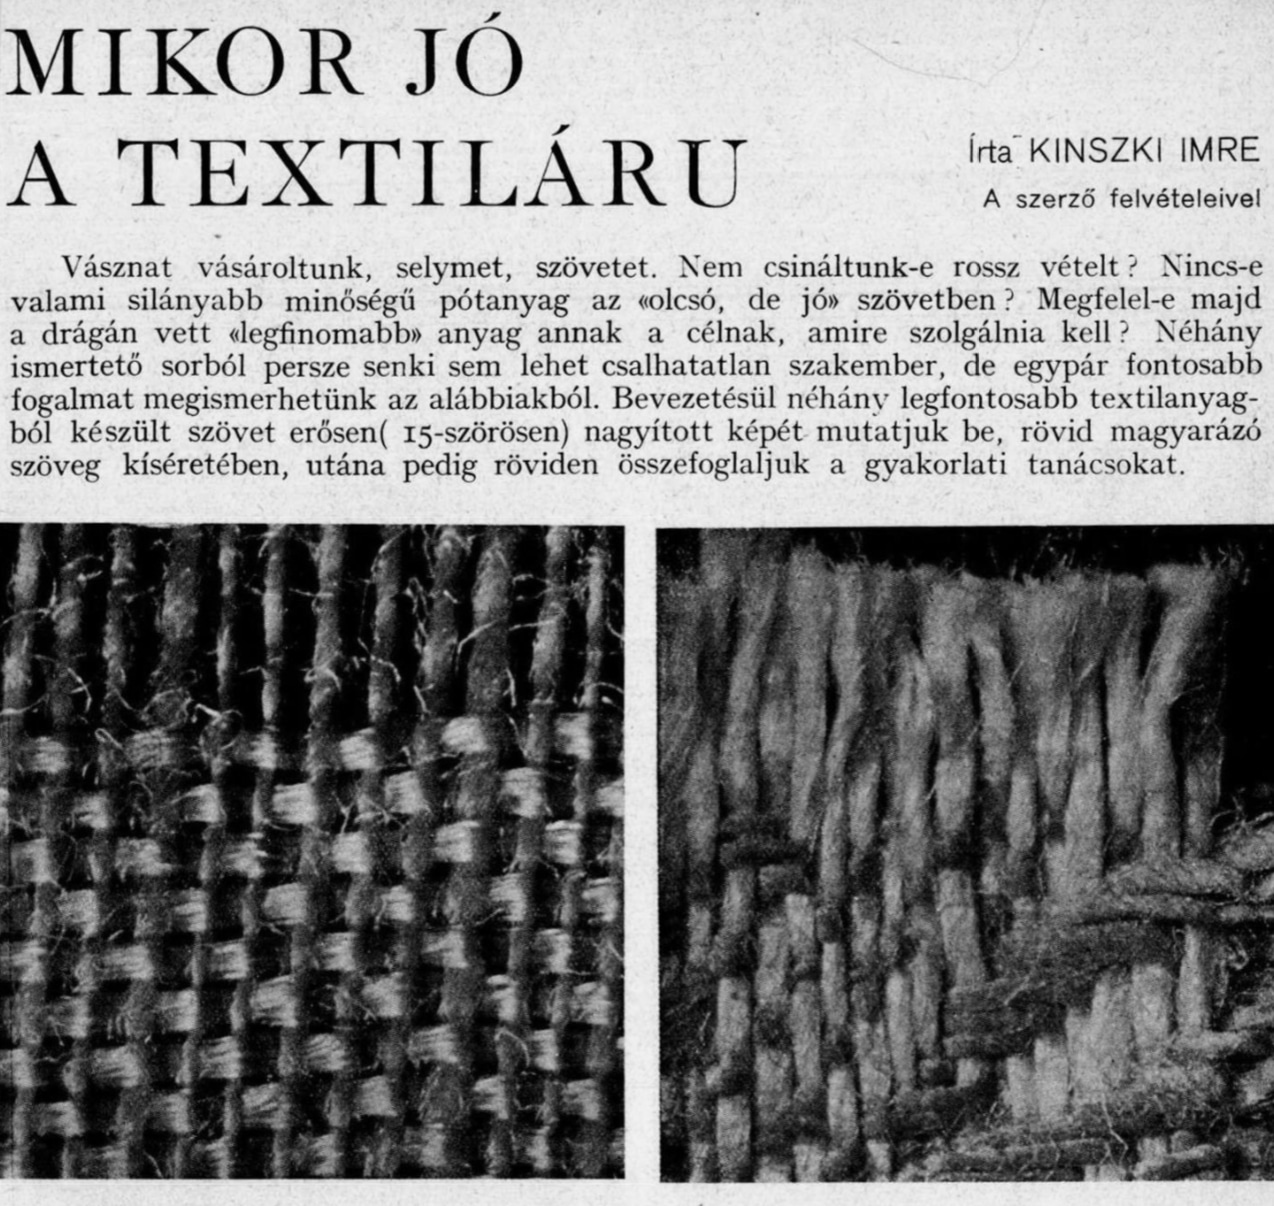 5a. Imre Kinszki, <i>Mikor jó a textiláru</i> (“What Makes A Good Fabric”), p. 1 (detail), 1935 © FSZEK